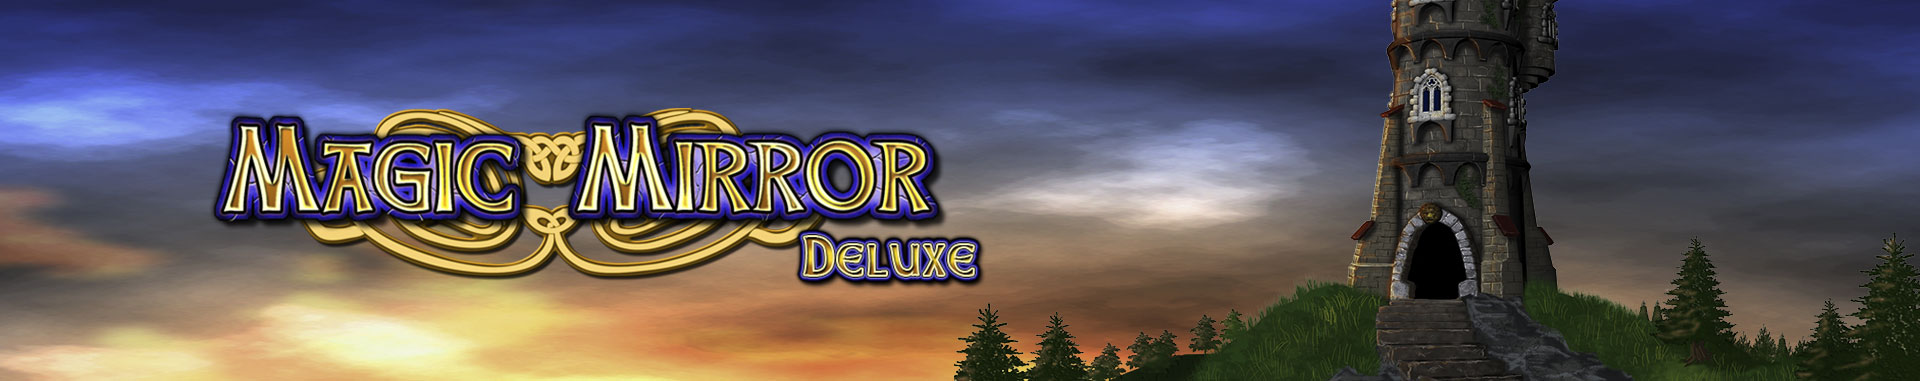 Tragaperras Online Magic Mirror Deluxe II